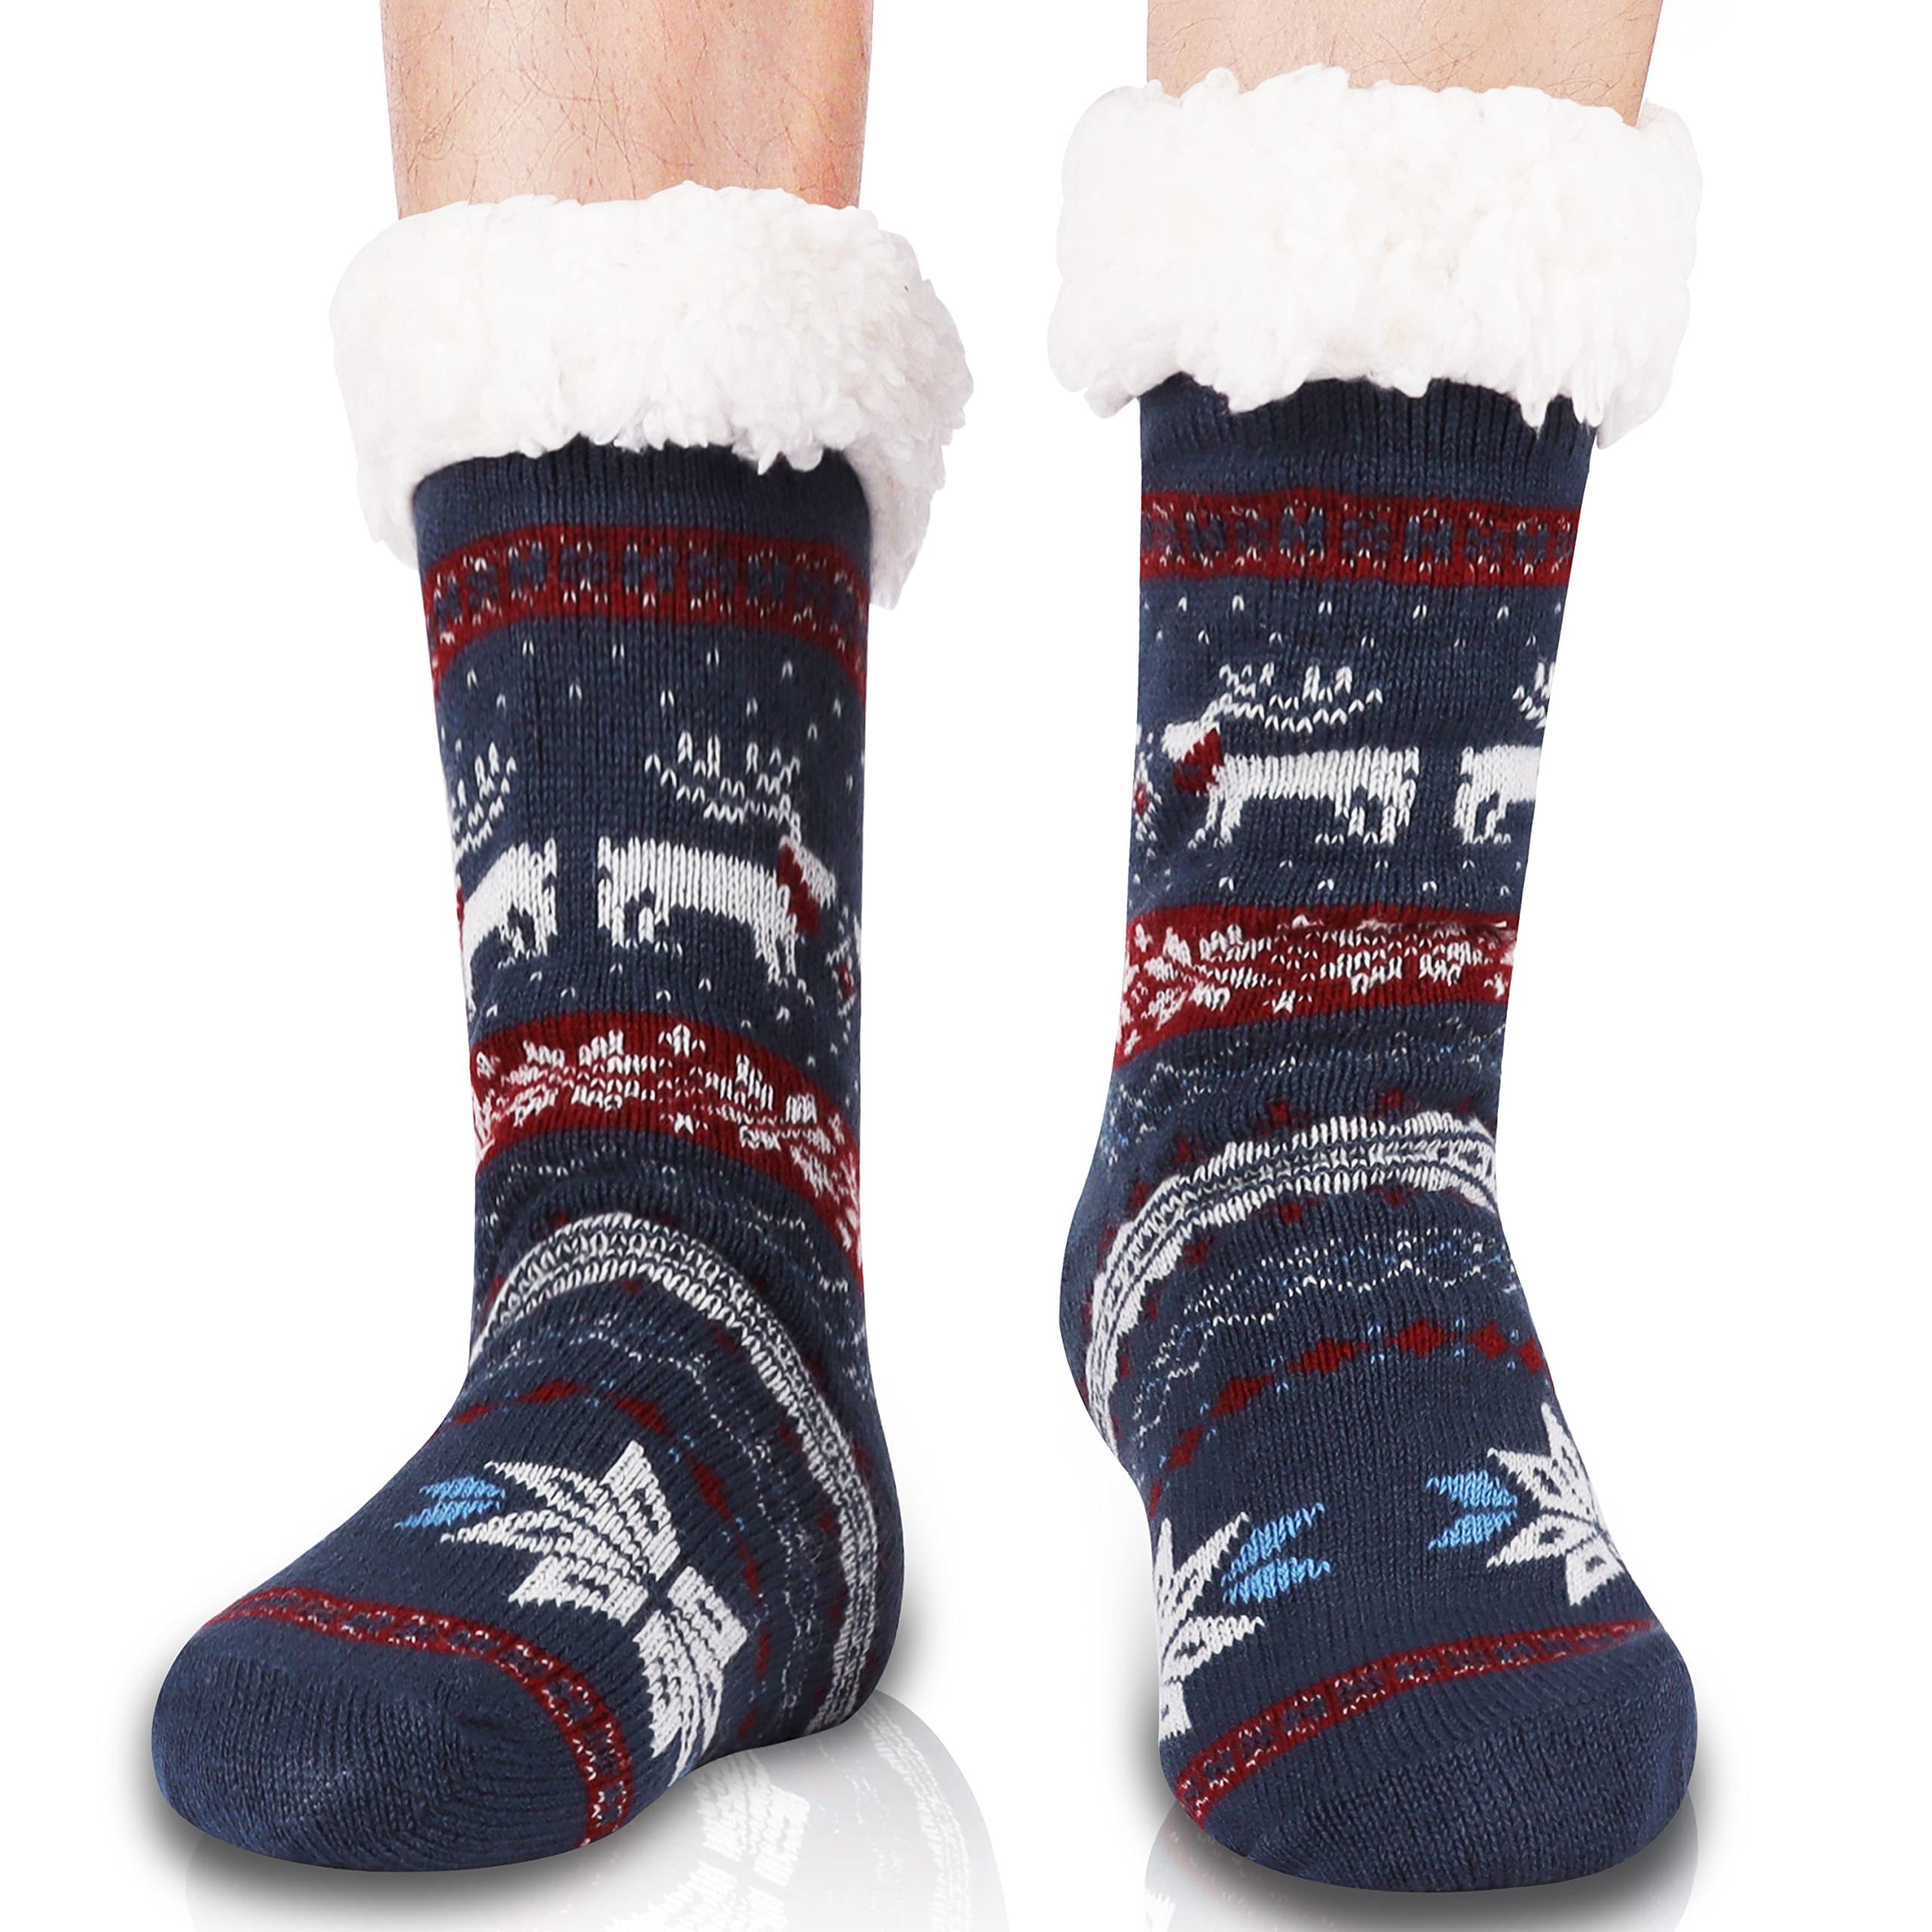 SOIMISS 3 pares de calcetines cálidos para habitación de invierno,  calcetines esponjosos, pantuflas para adultos, calcetines gruesos,  calcetines de